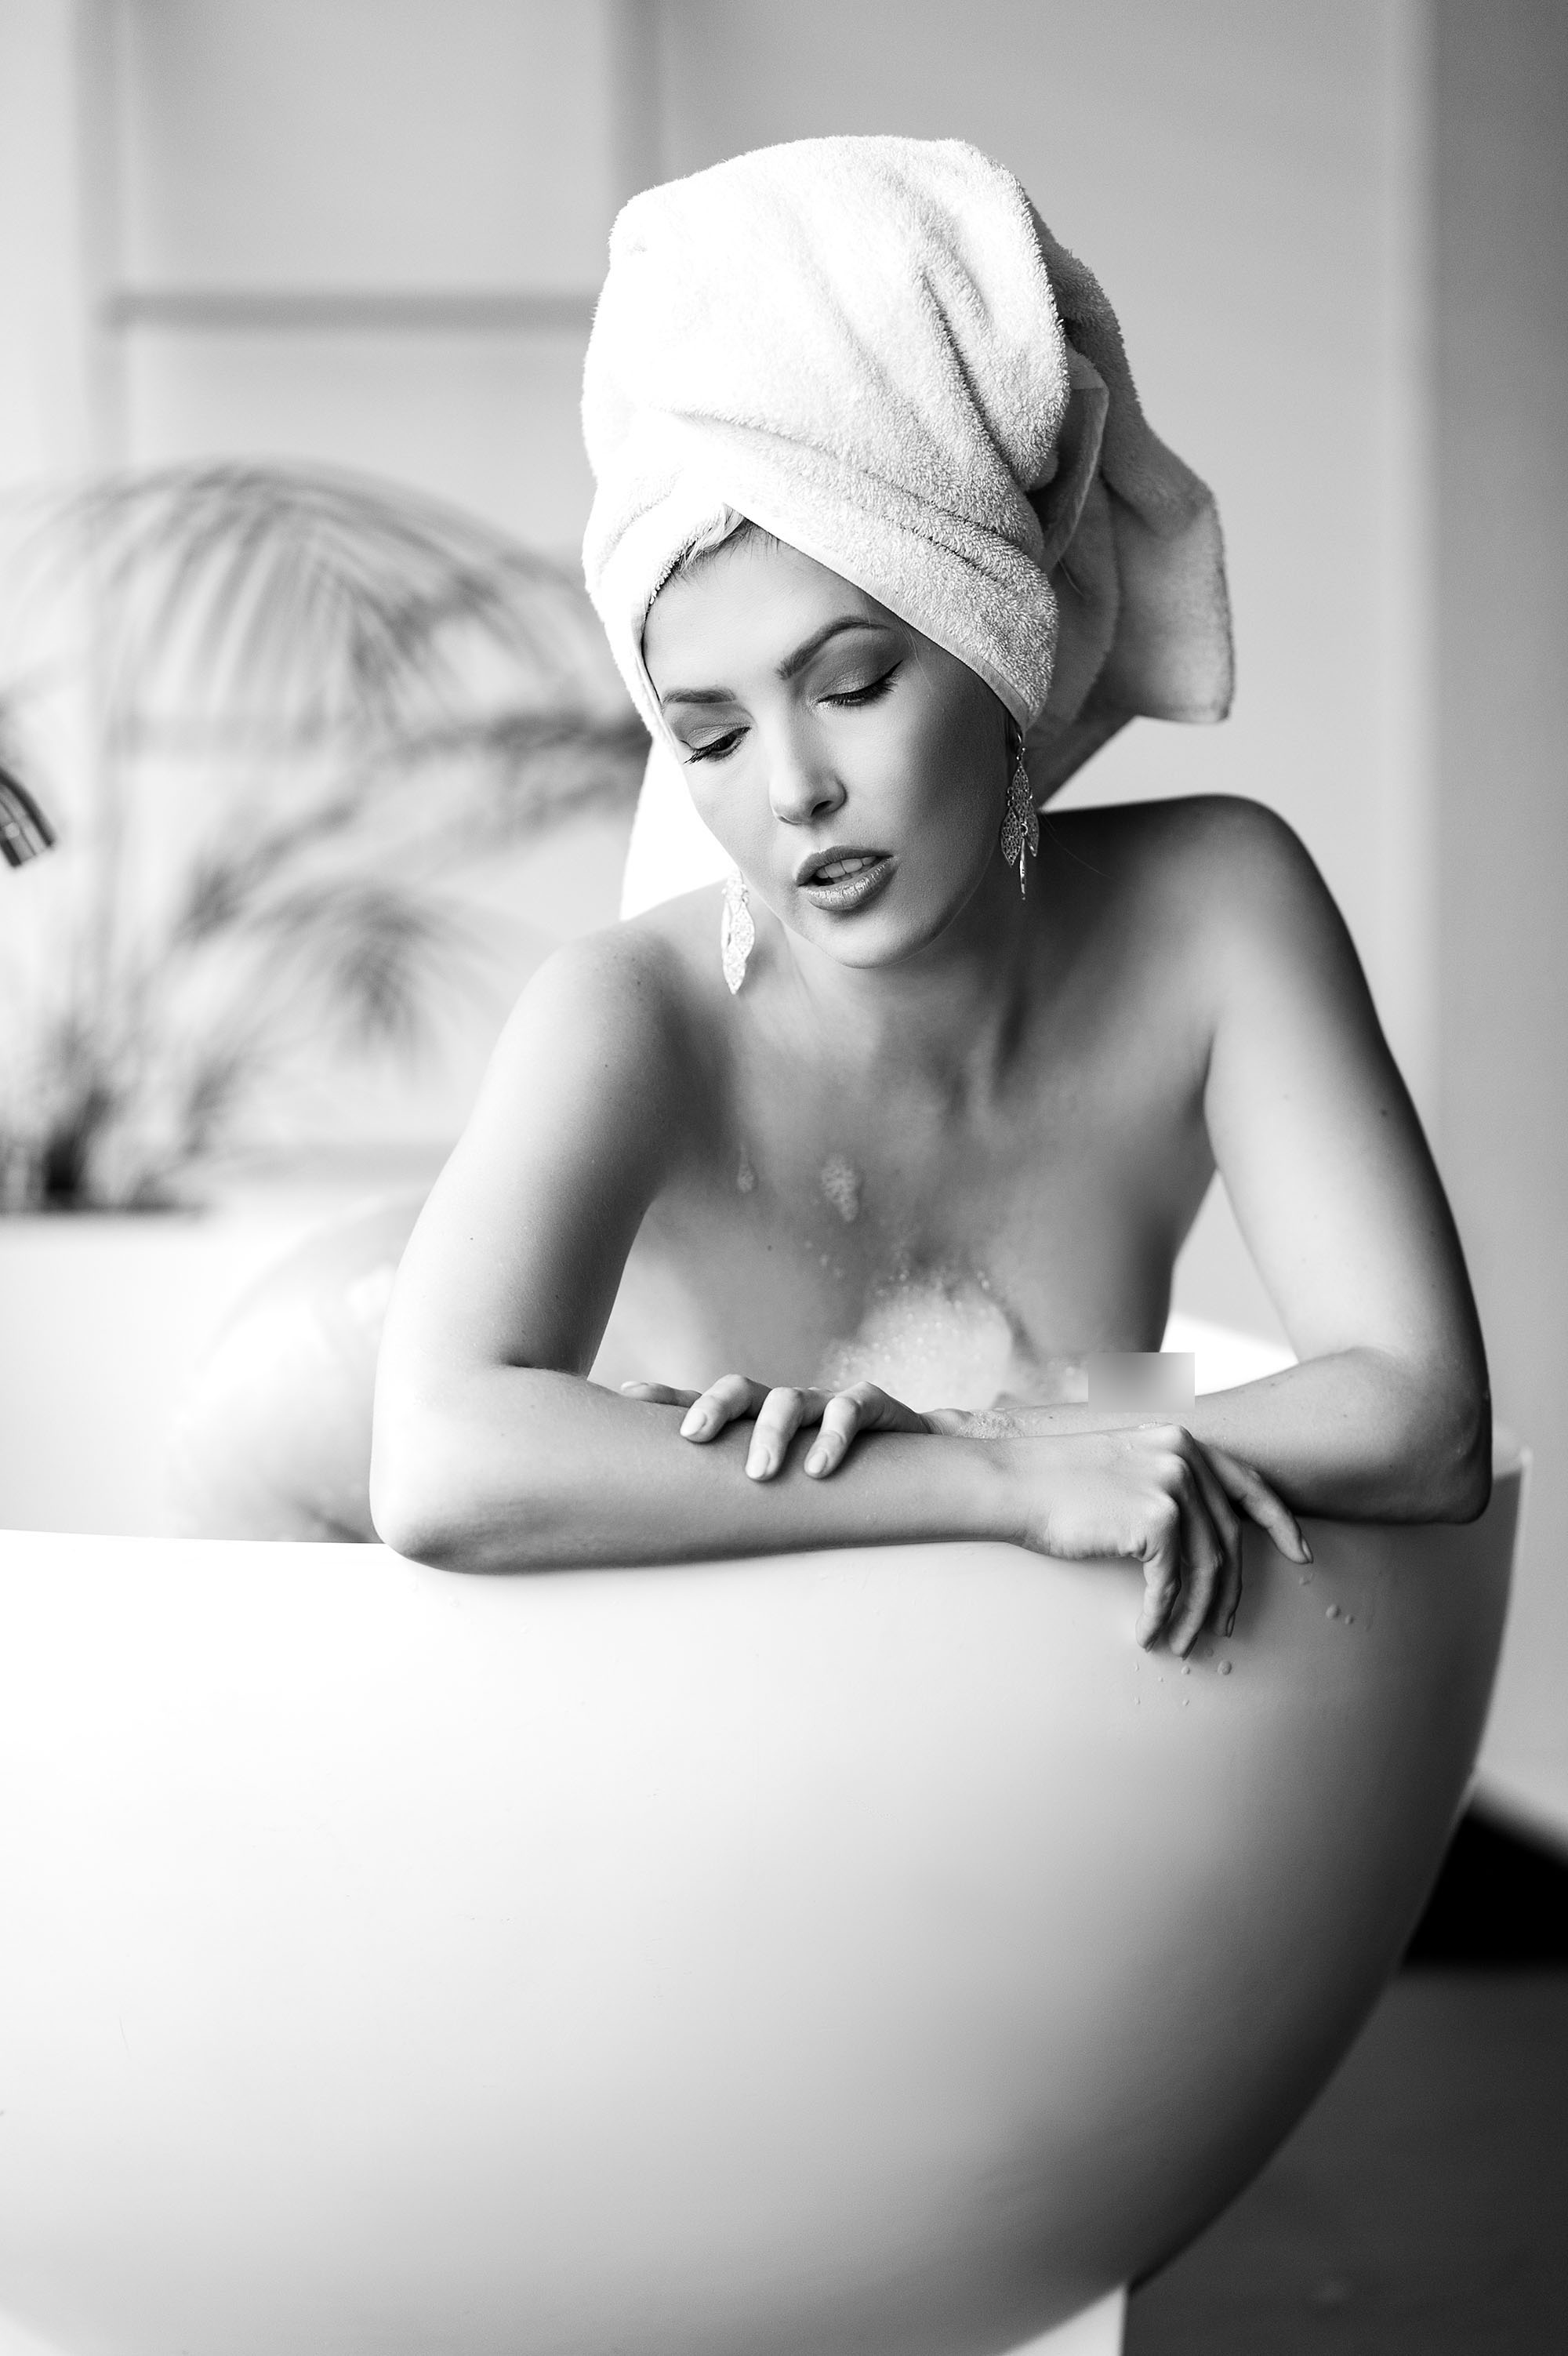 Sylph Sia, model from Australia at a boudoir photoshoot